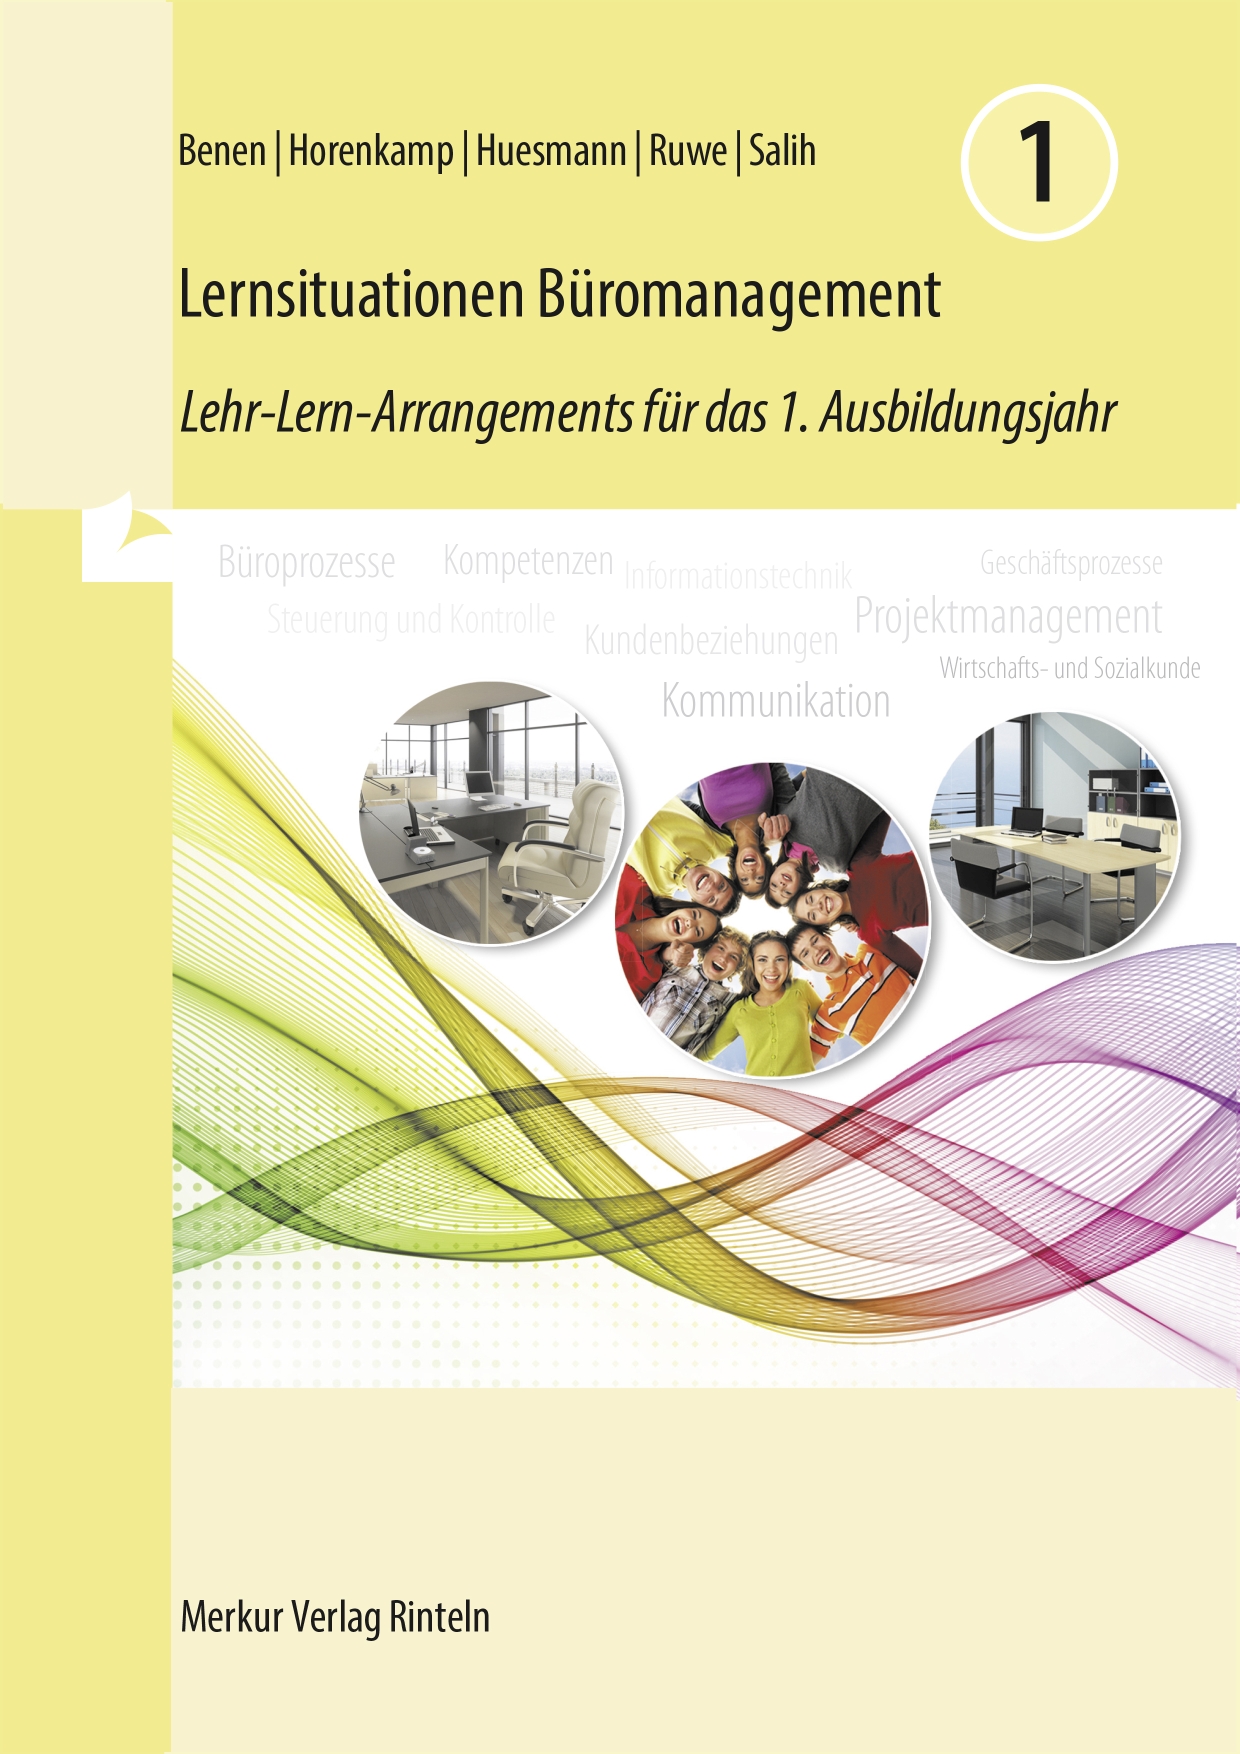 Lernsituationen Büromanagement 1 Lehr-Lern-Arrangements für das 1. Ausbildungsjahr (Lernfelder 1 bis 4)